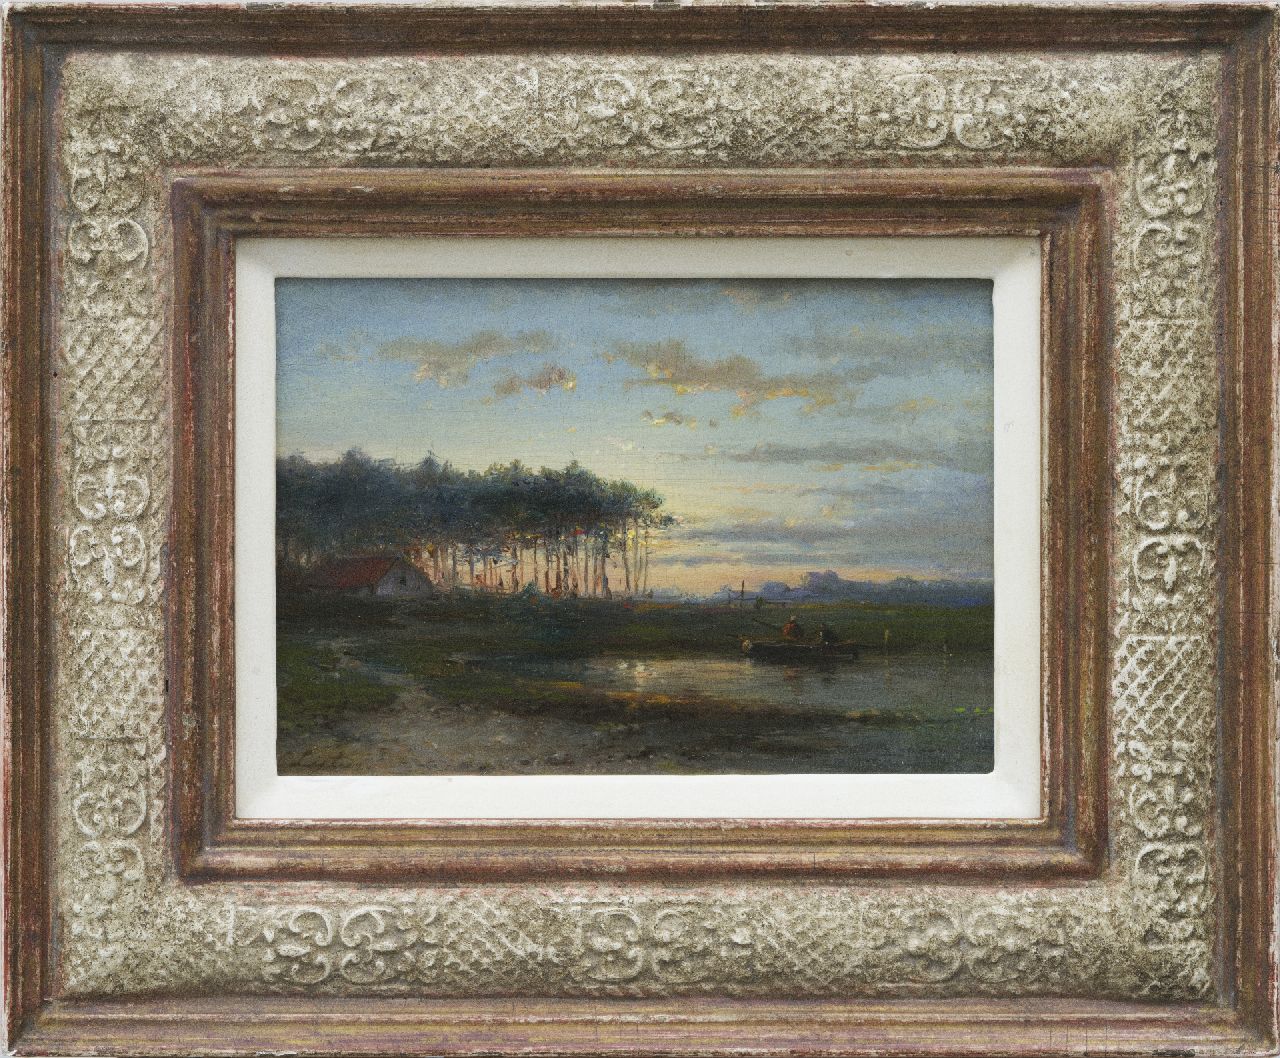 Lieste C.  | Cornelis Lieste, Avondlandschap met vissers in een bootje, olieverf op paneel 13,1 x 18,7 cm, gesigneerd linksonder